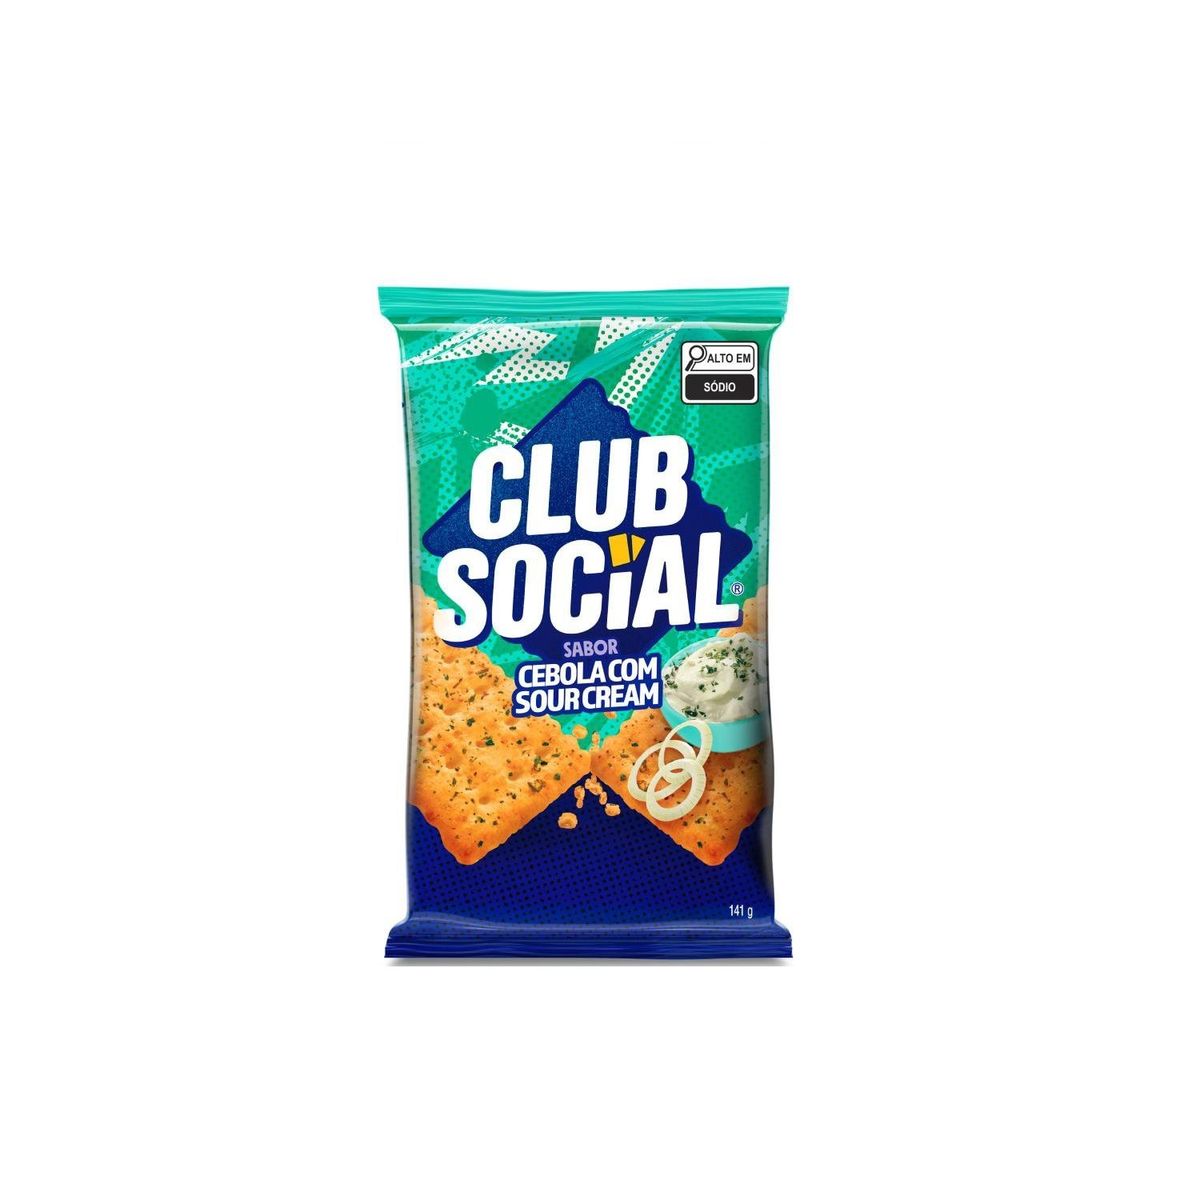 Biscoito Club Social Cebola com Sour Cream 141g